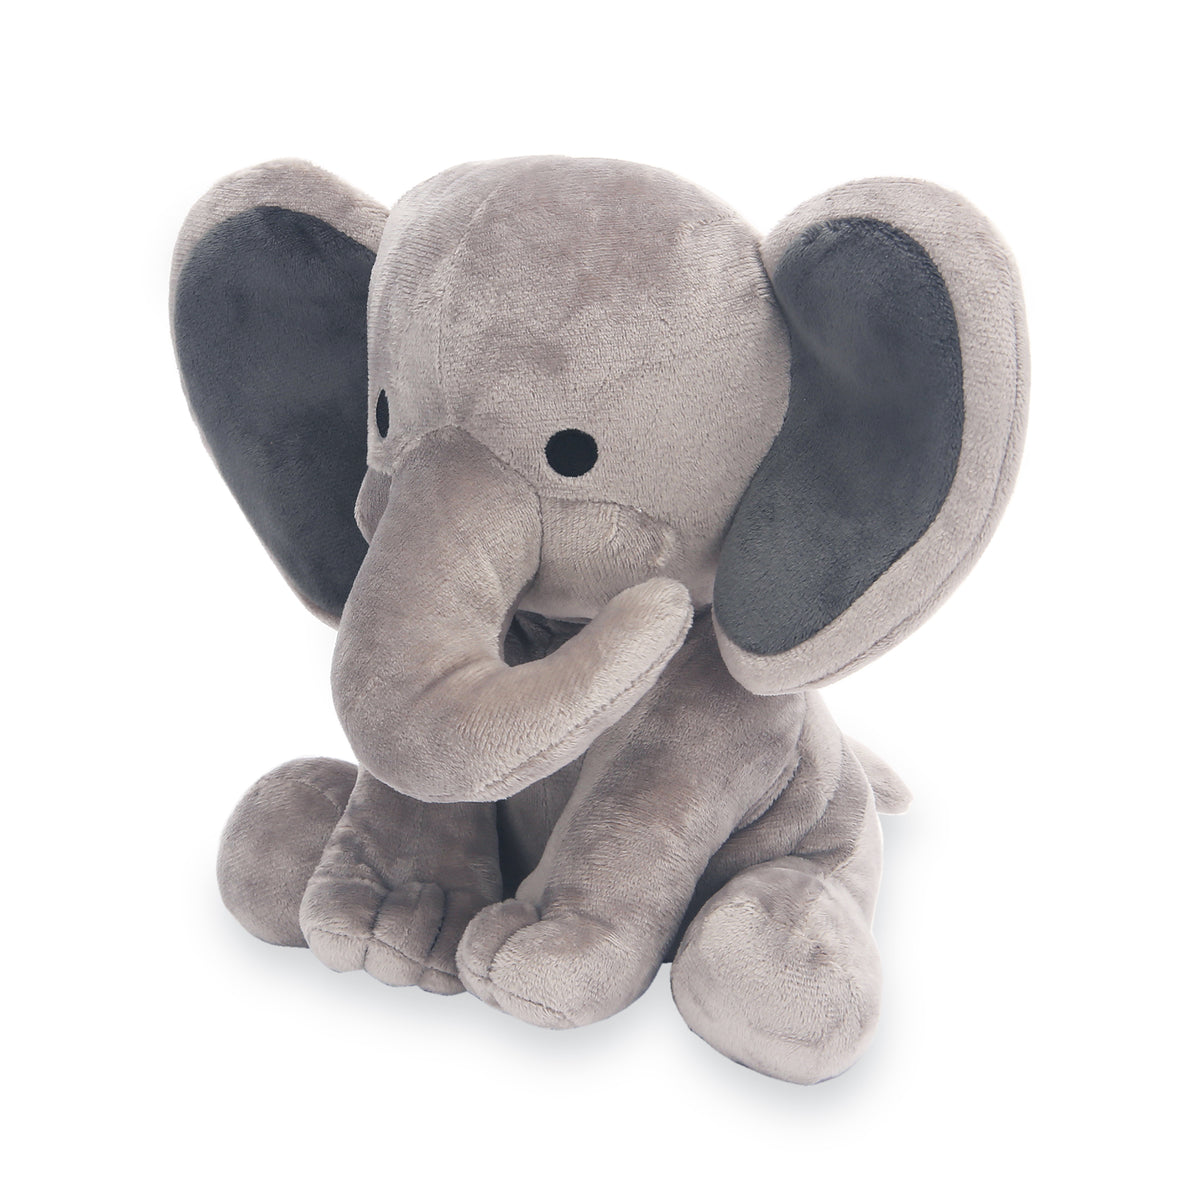 humphrey elephant plush